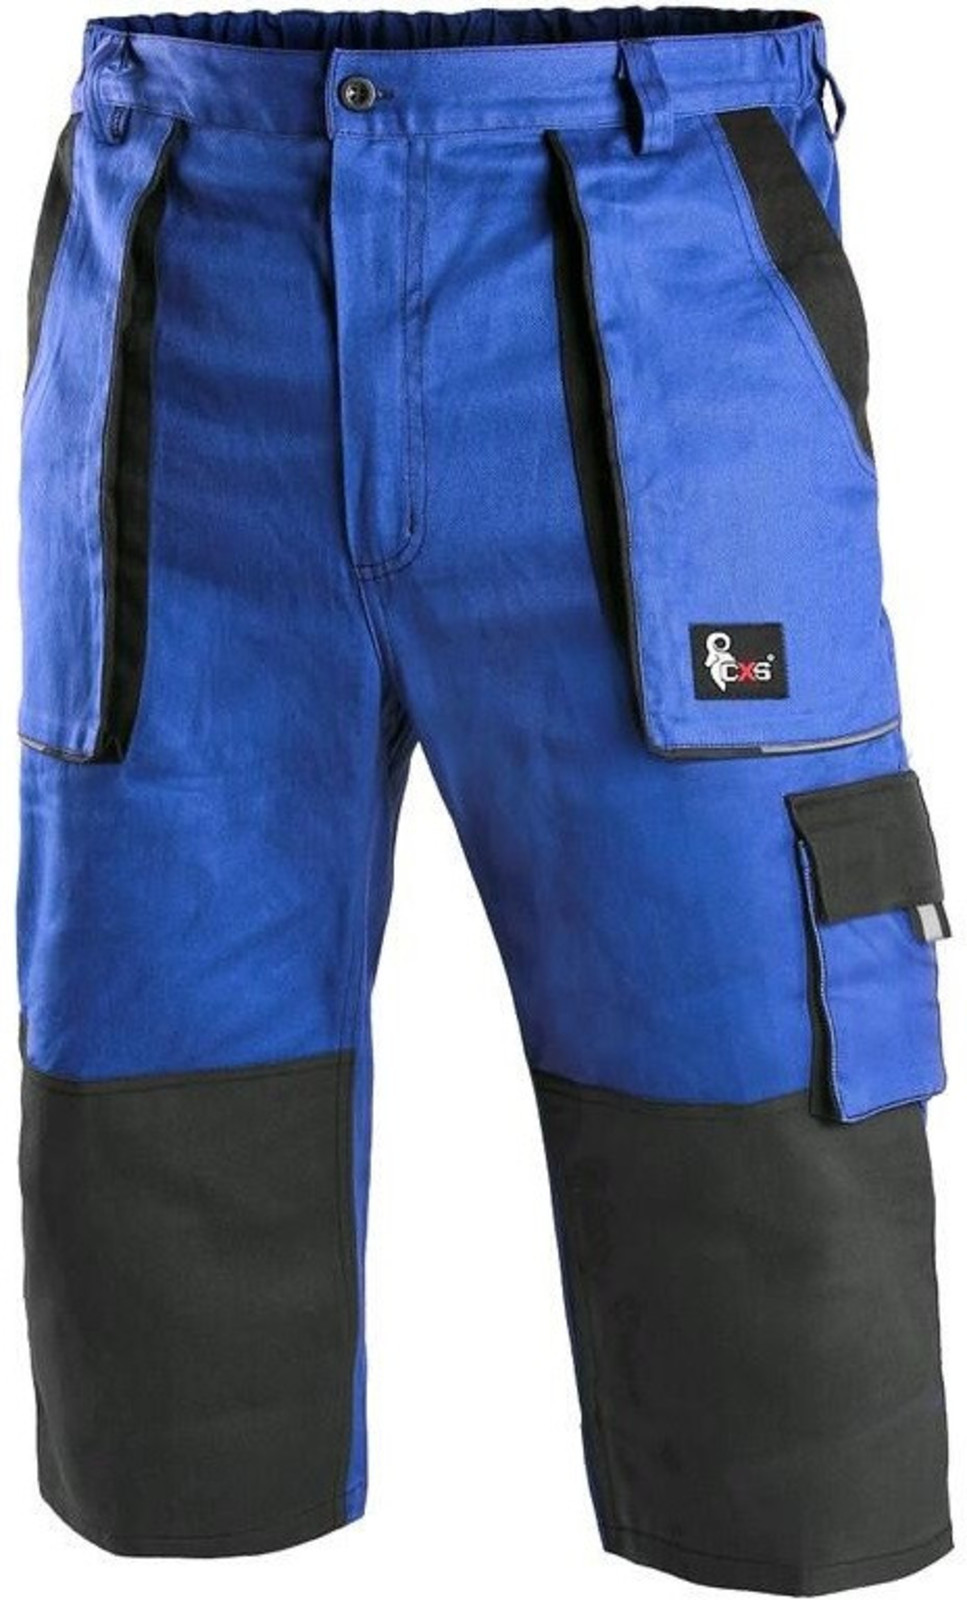 Pánske montérkové 3/4 nohavice CXS Luxy Patrik - veľkosť: 62, farba: modrá/čierna